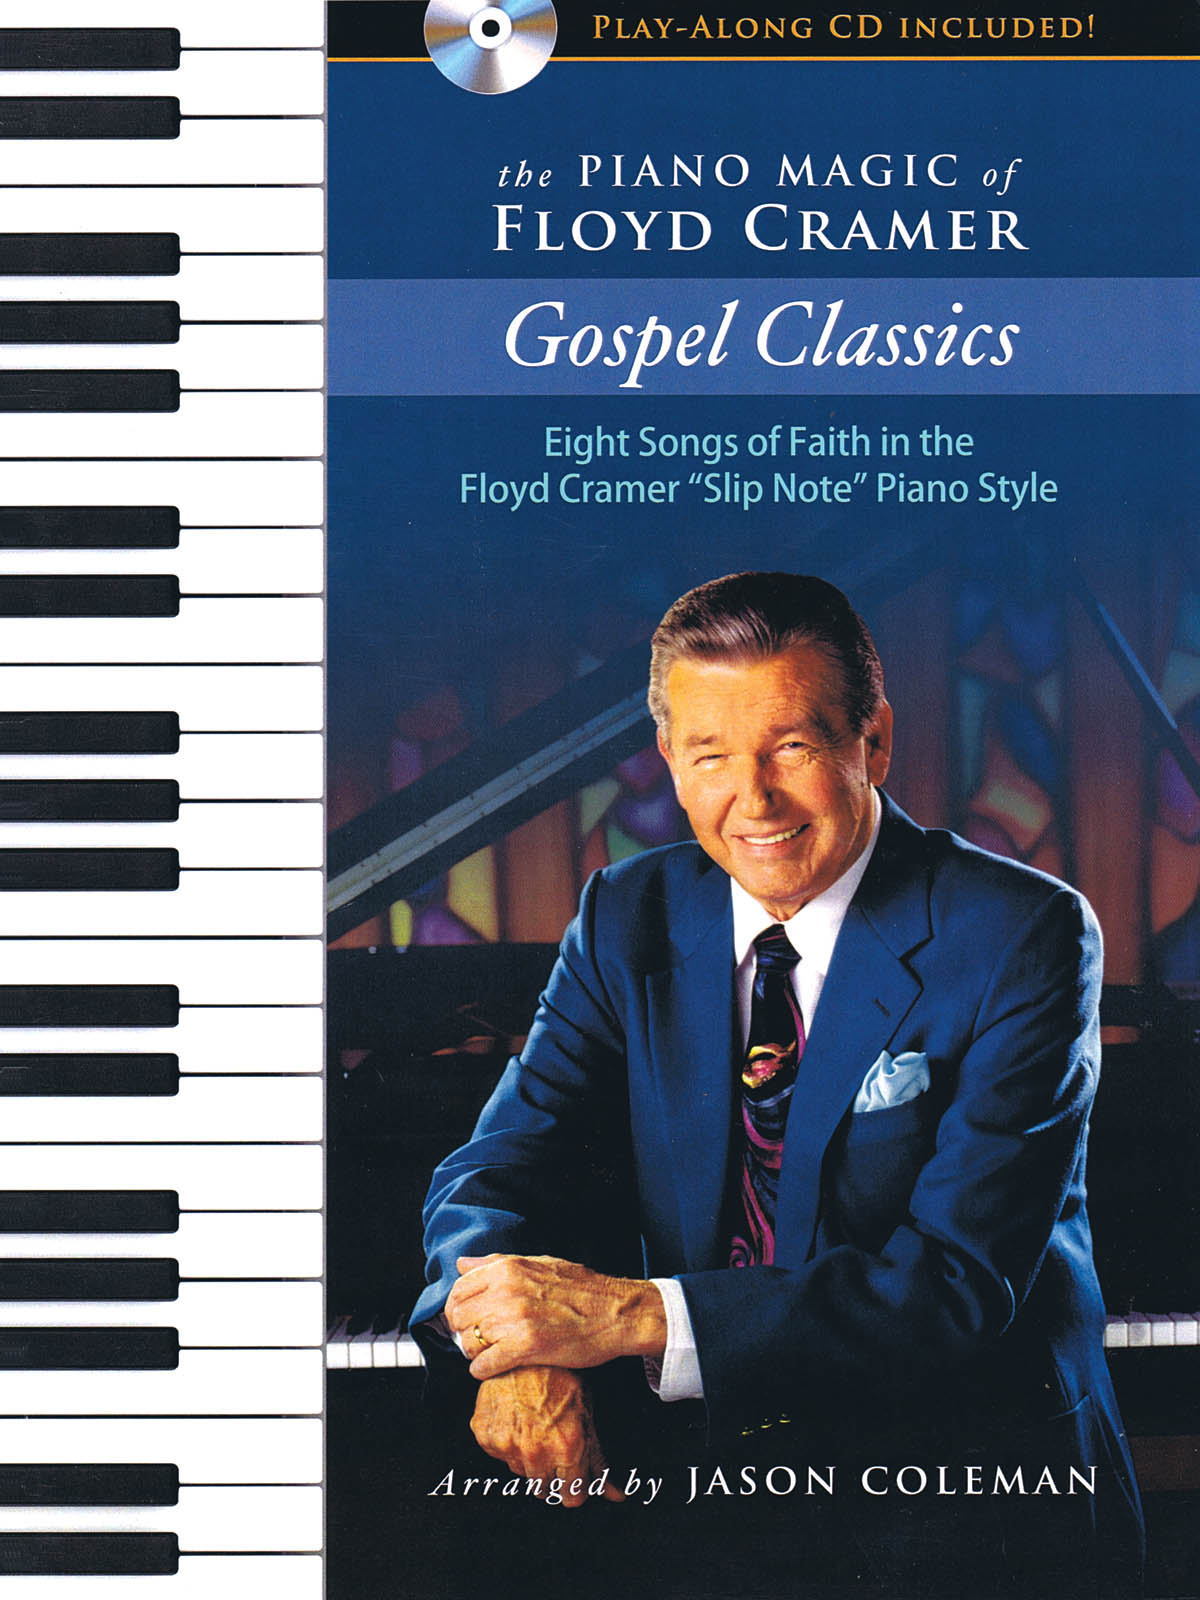 The Piano Magic of Floyd Cramer: Gospel Classics